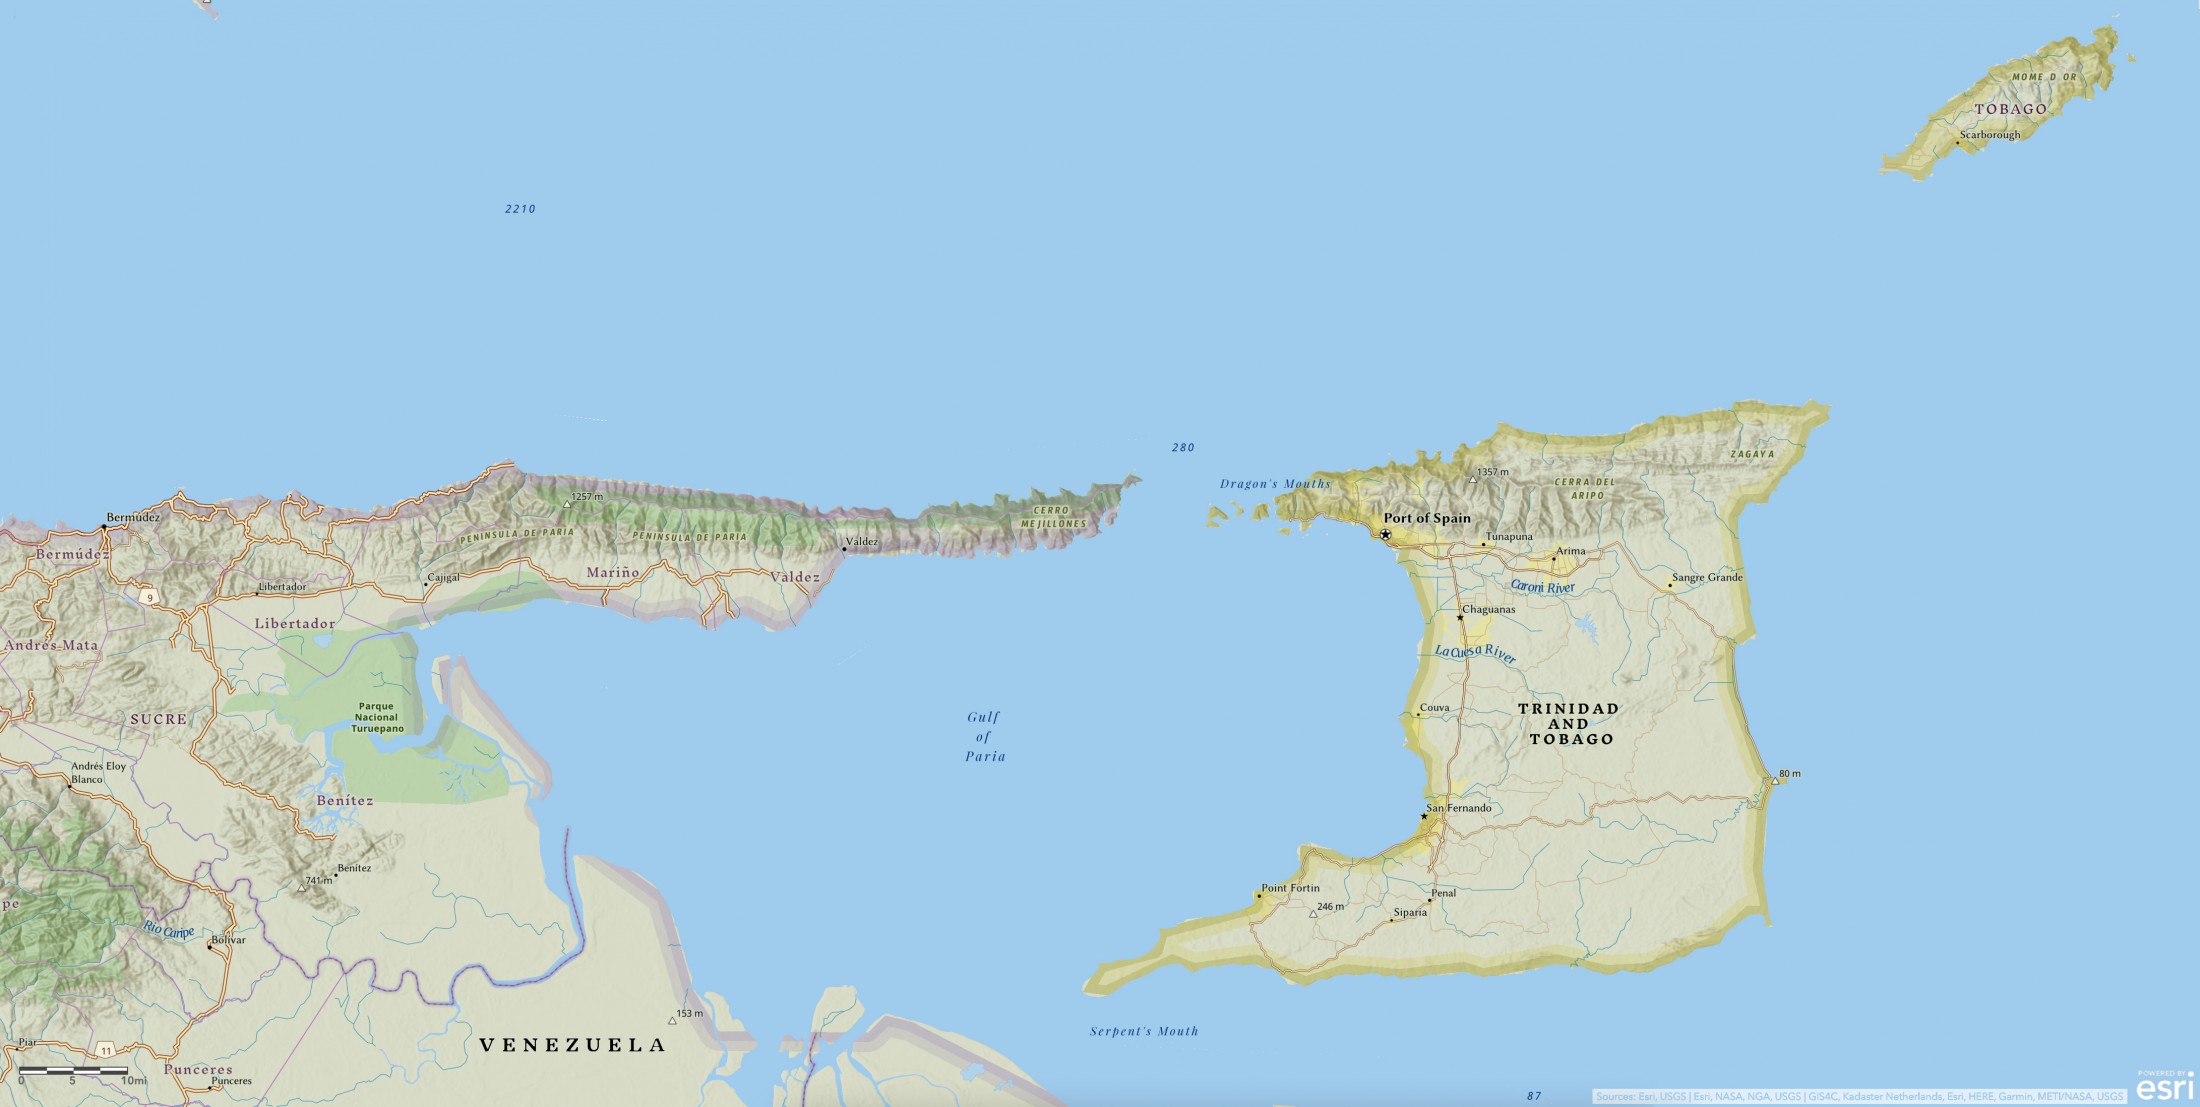 Map of Trinidad and Tobago in relation to Venezuela